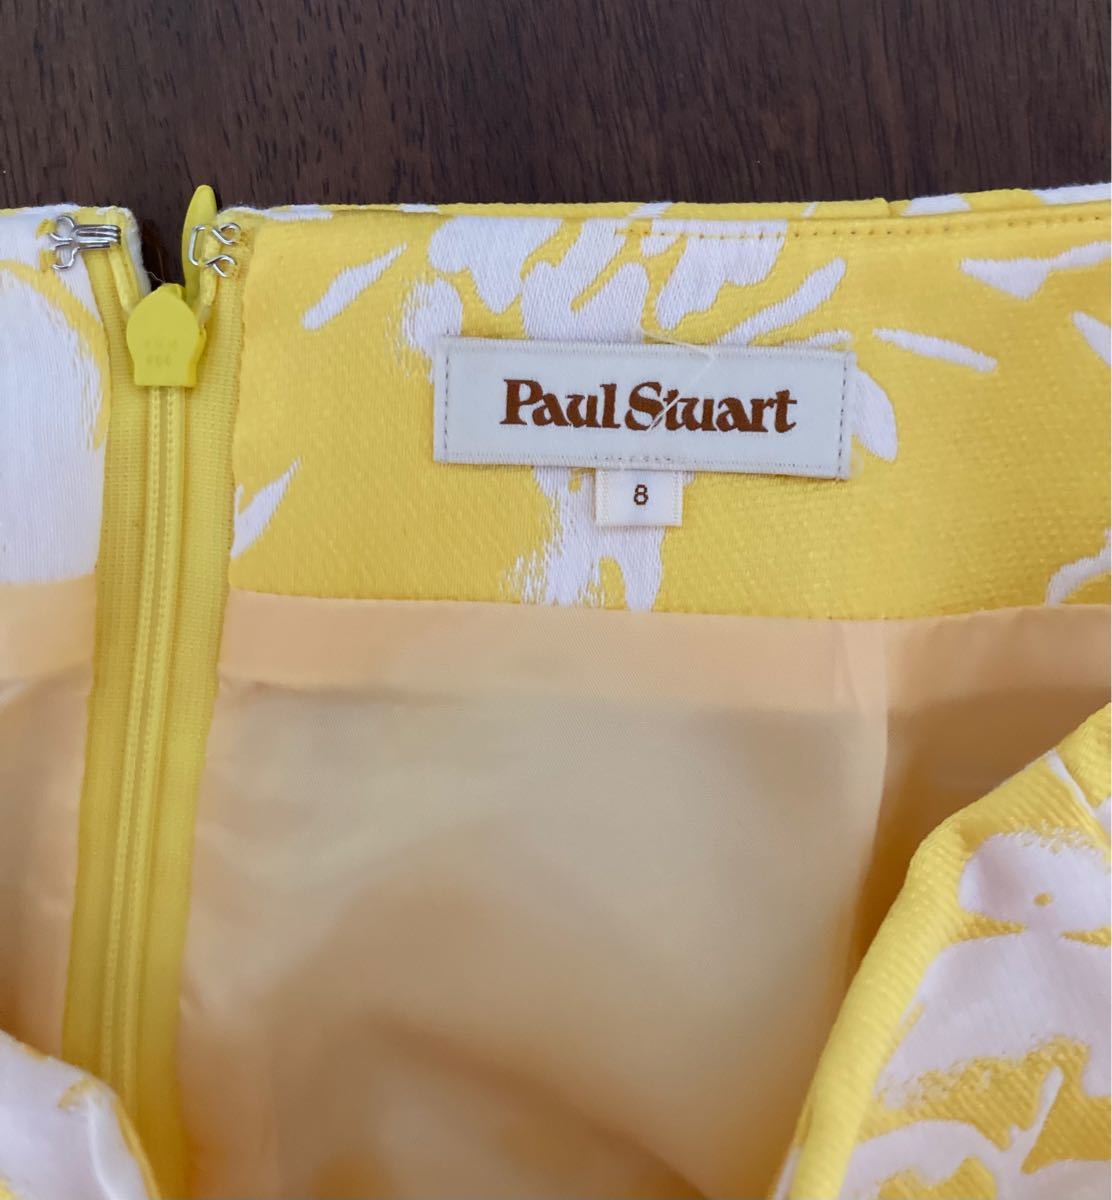 PAUL STUARTボックススカート 8号